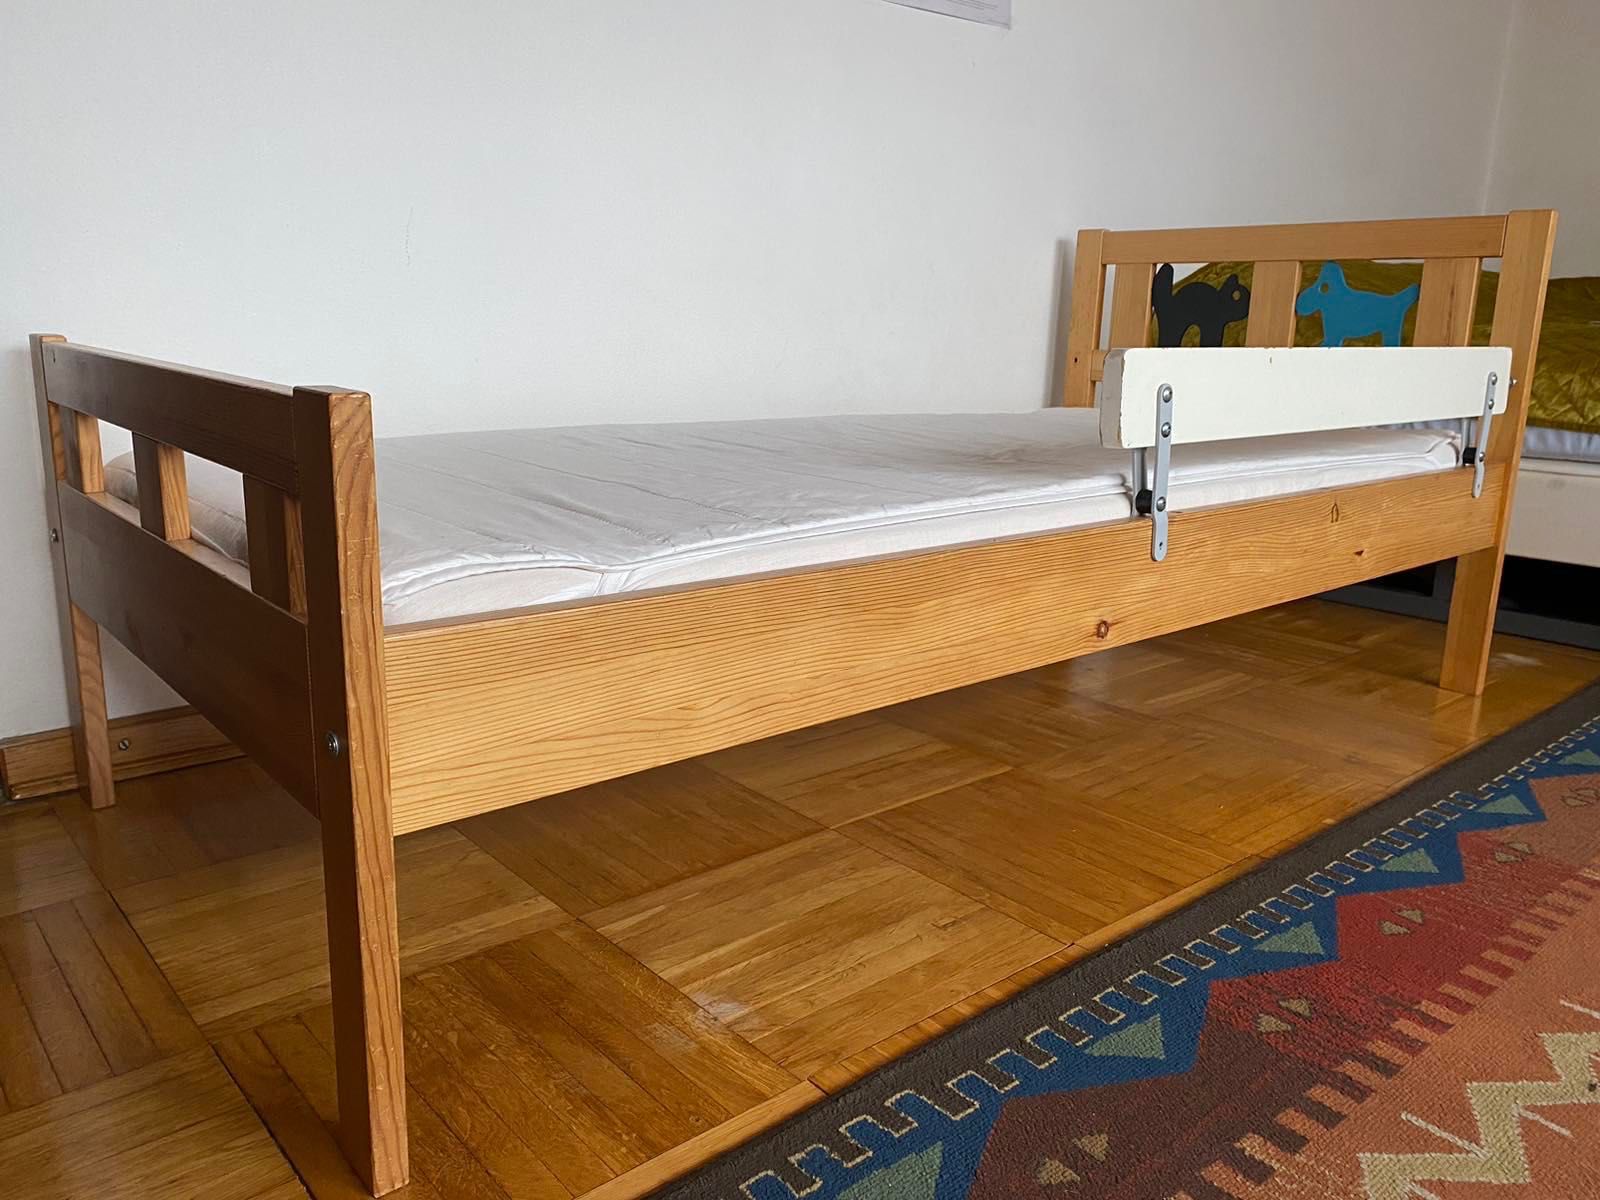 Łóżko dziecięce Ikea 70x160, materac, nakładka, pościel, 250pln.